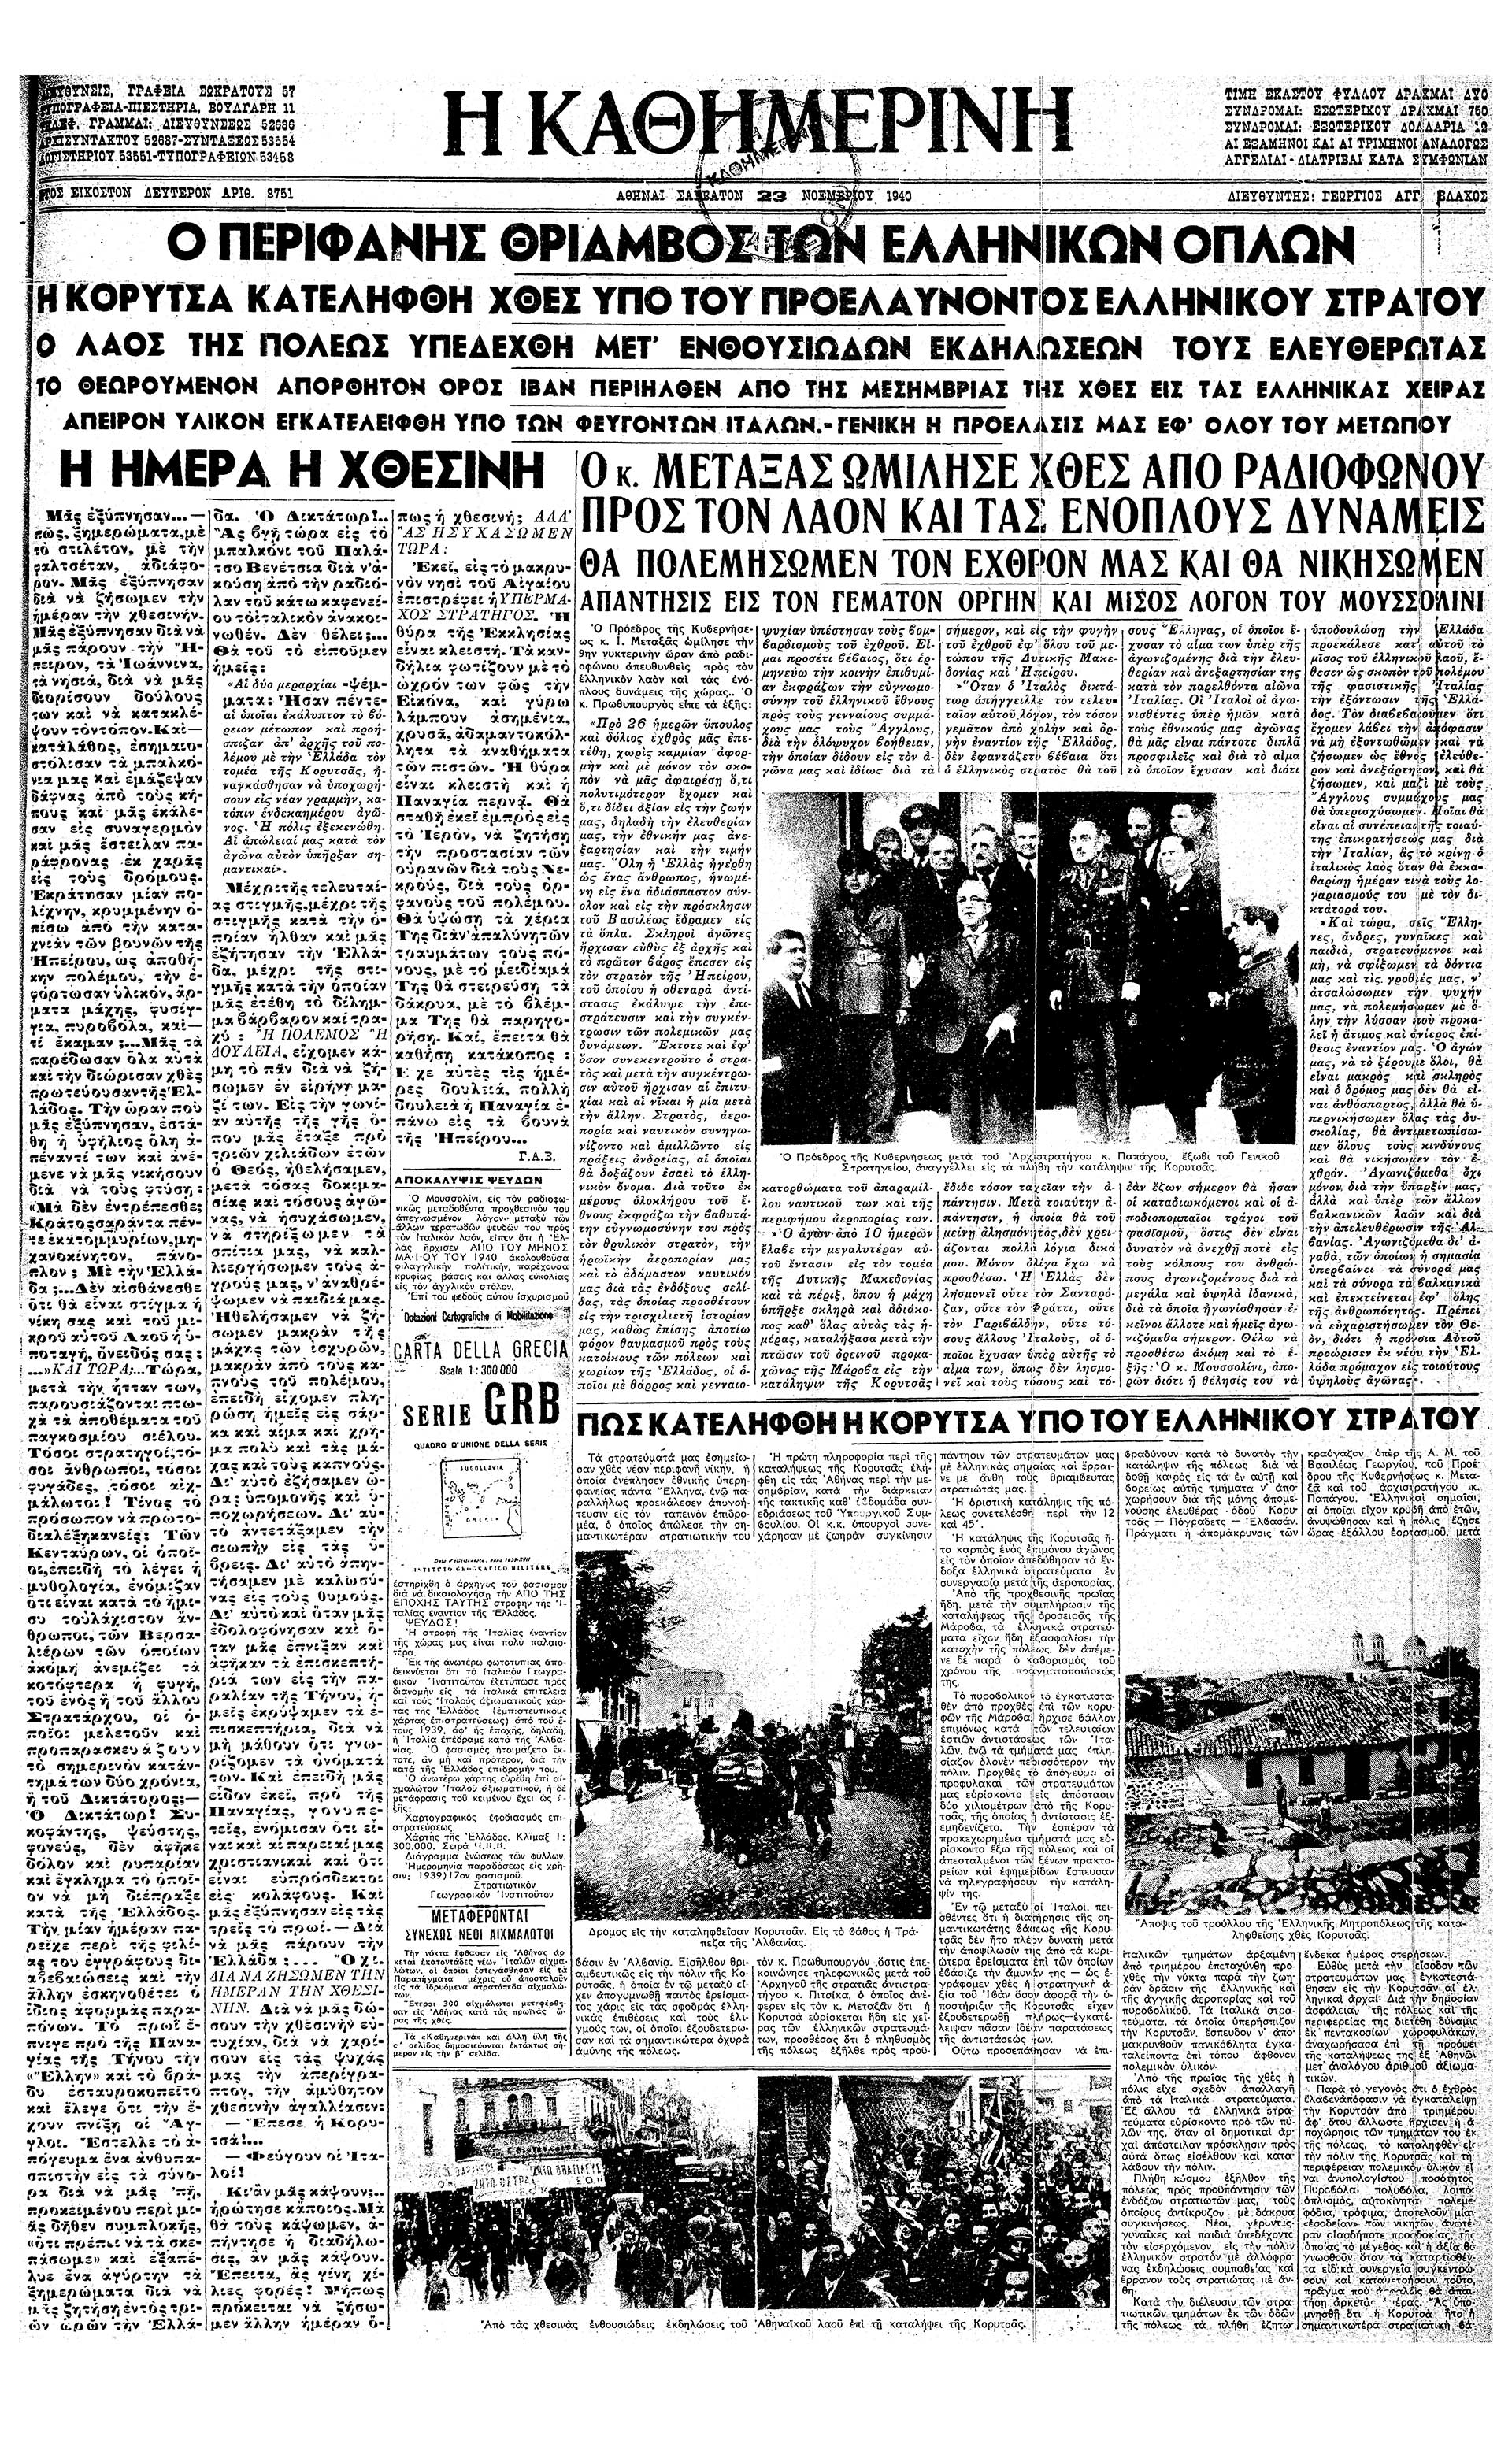 Σαν σήμερα: 22 Νοεμβρίου 1940 – Η απελευθέρωση της Κορυτσάς-2